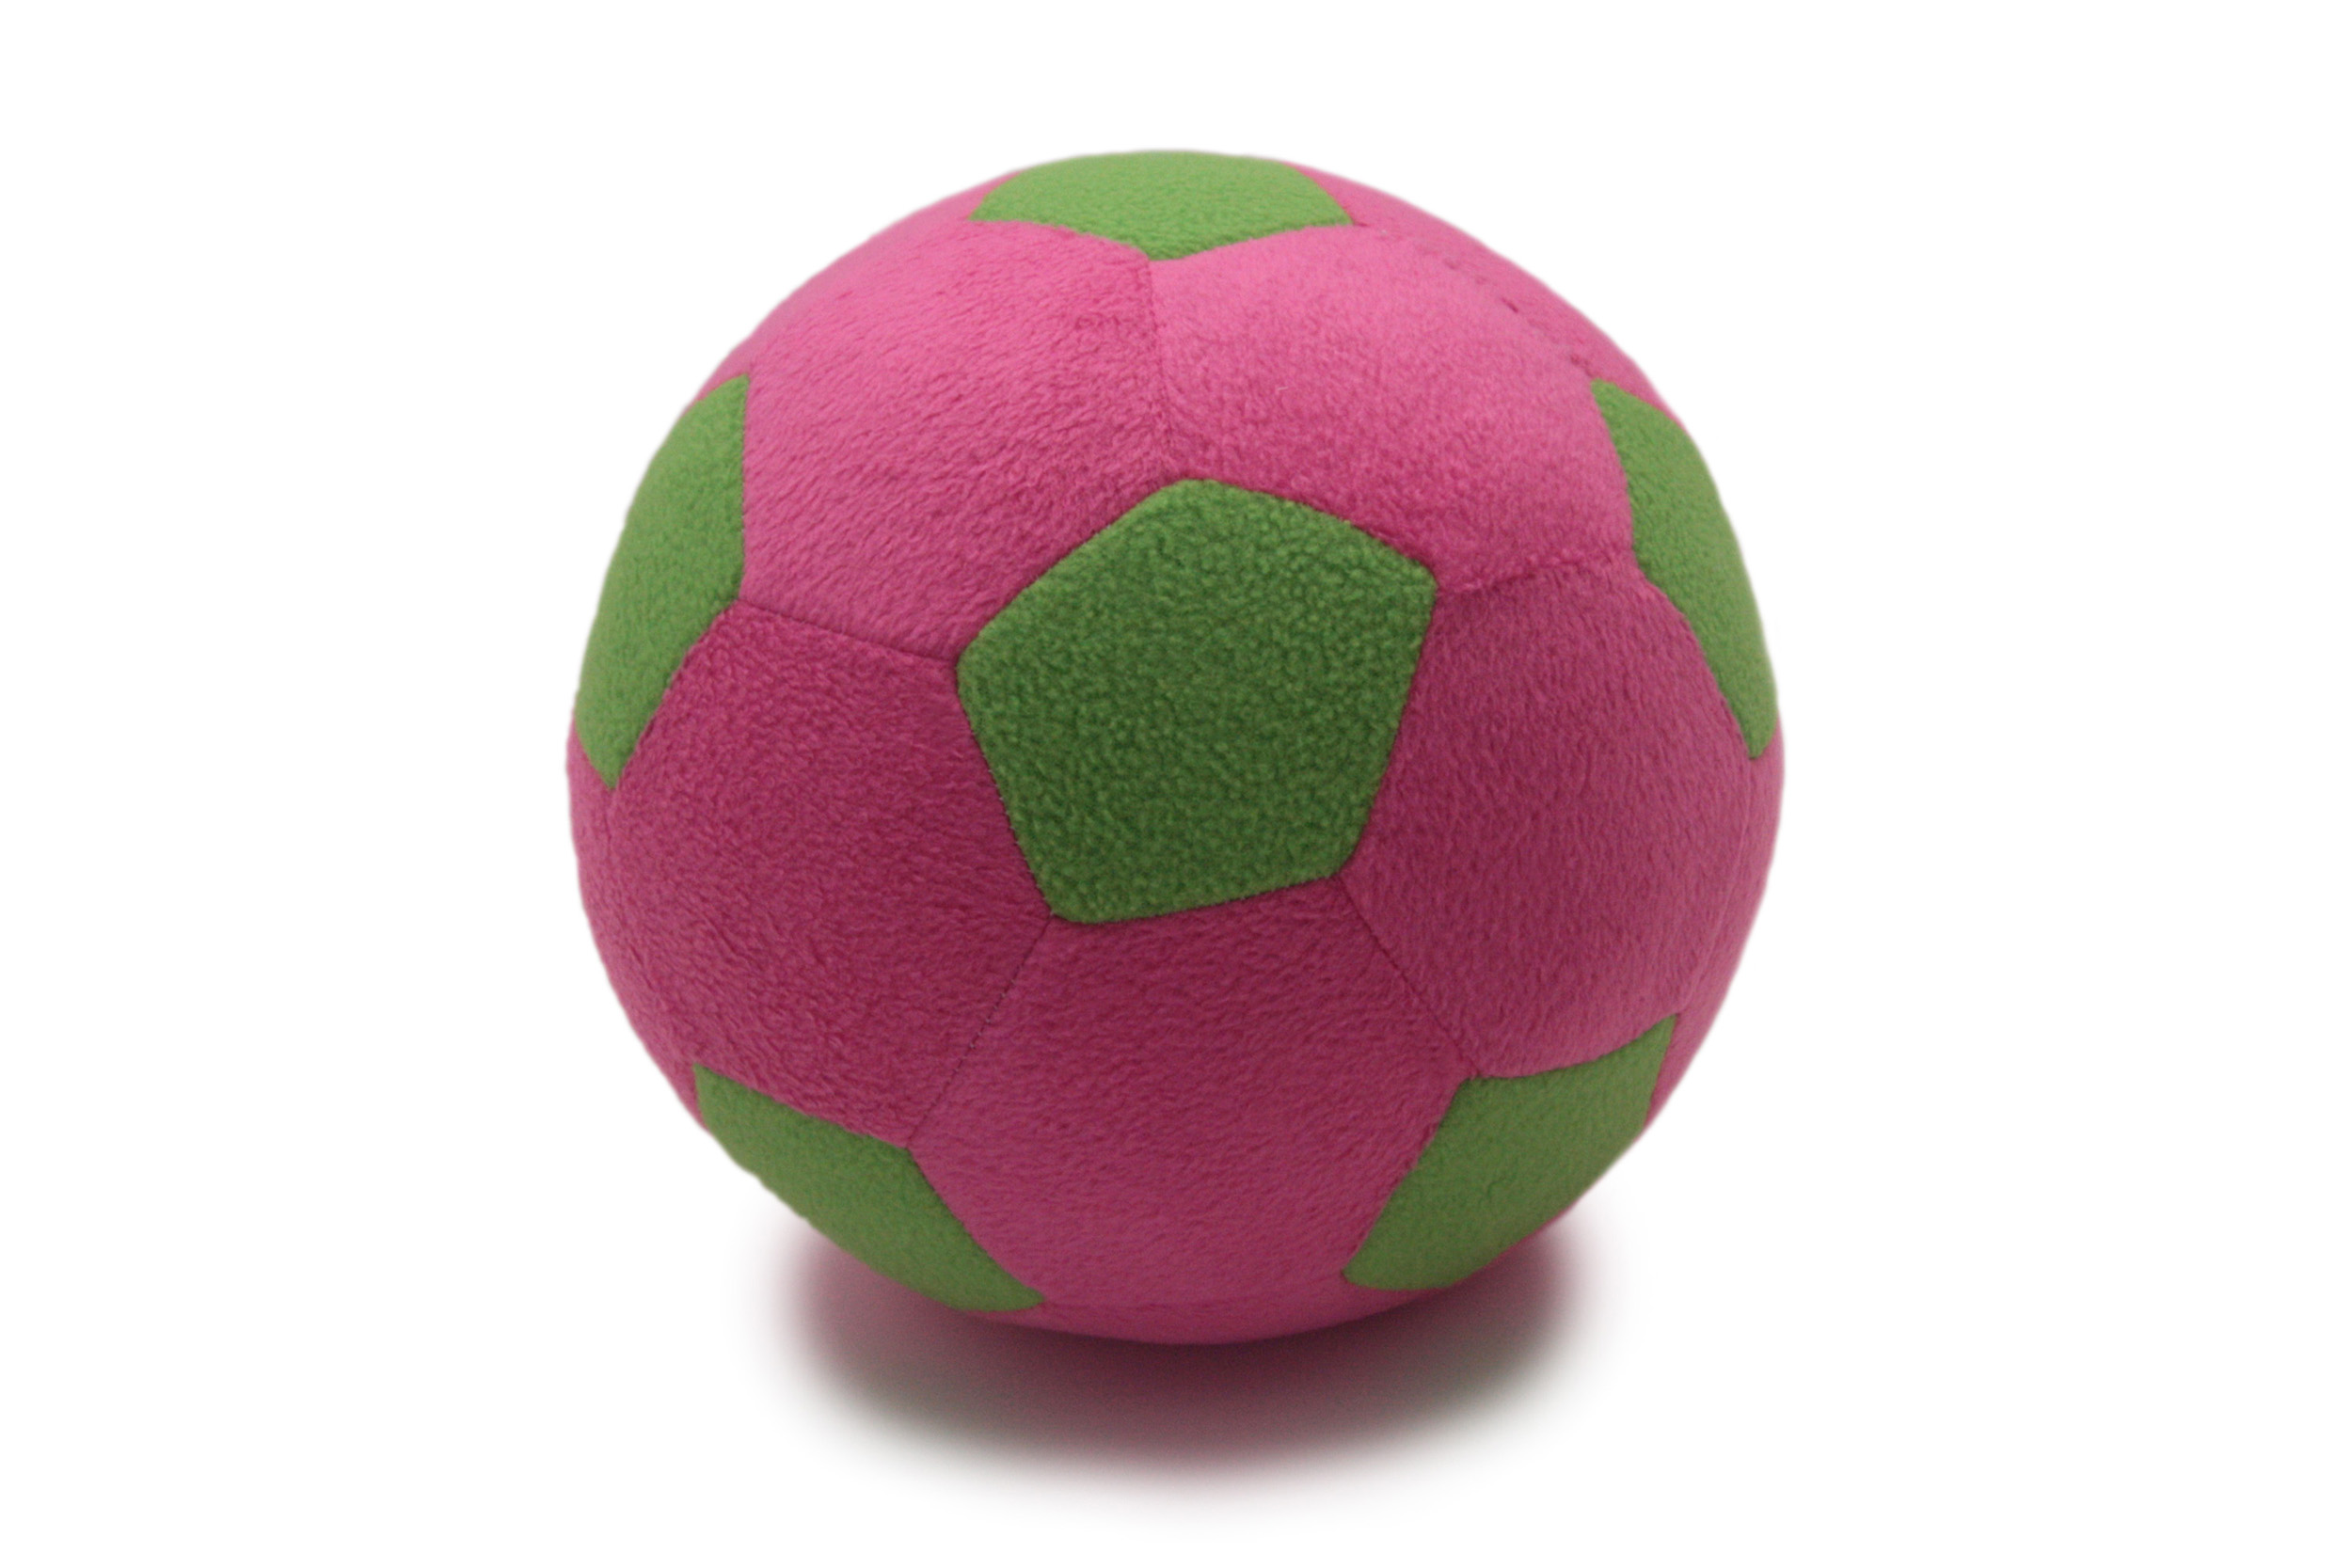 Детский мяч Magic Bear Toys F-100/PLG Мяч мягкий цвет розовый,светло-зеленый 23 см мягкая игрушка magic bear toys мишка кейн 25см 51054 11 серый